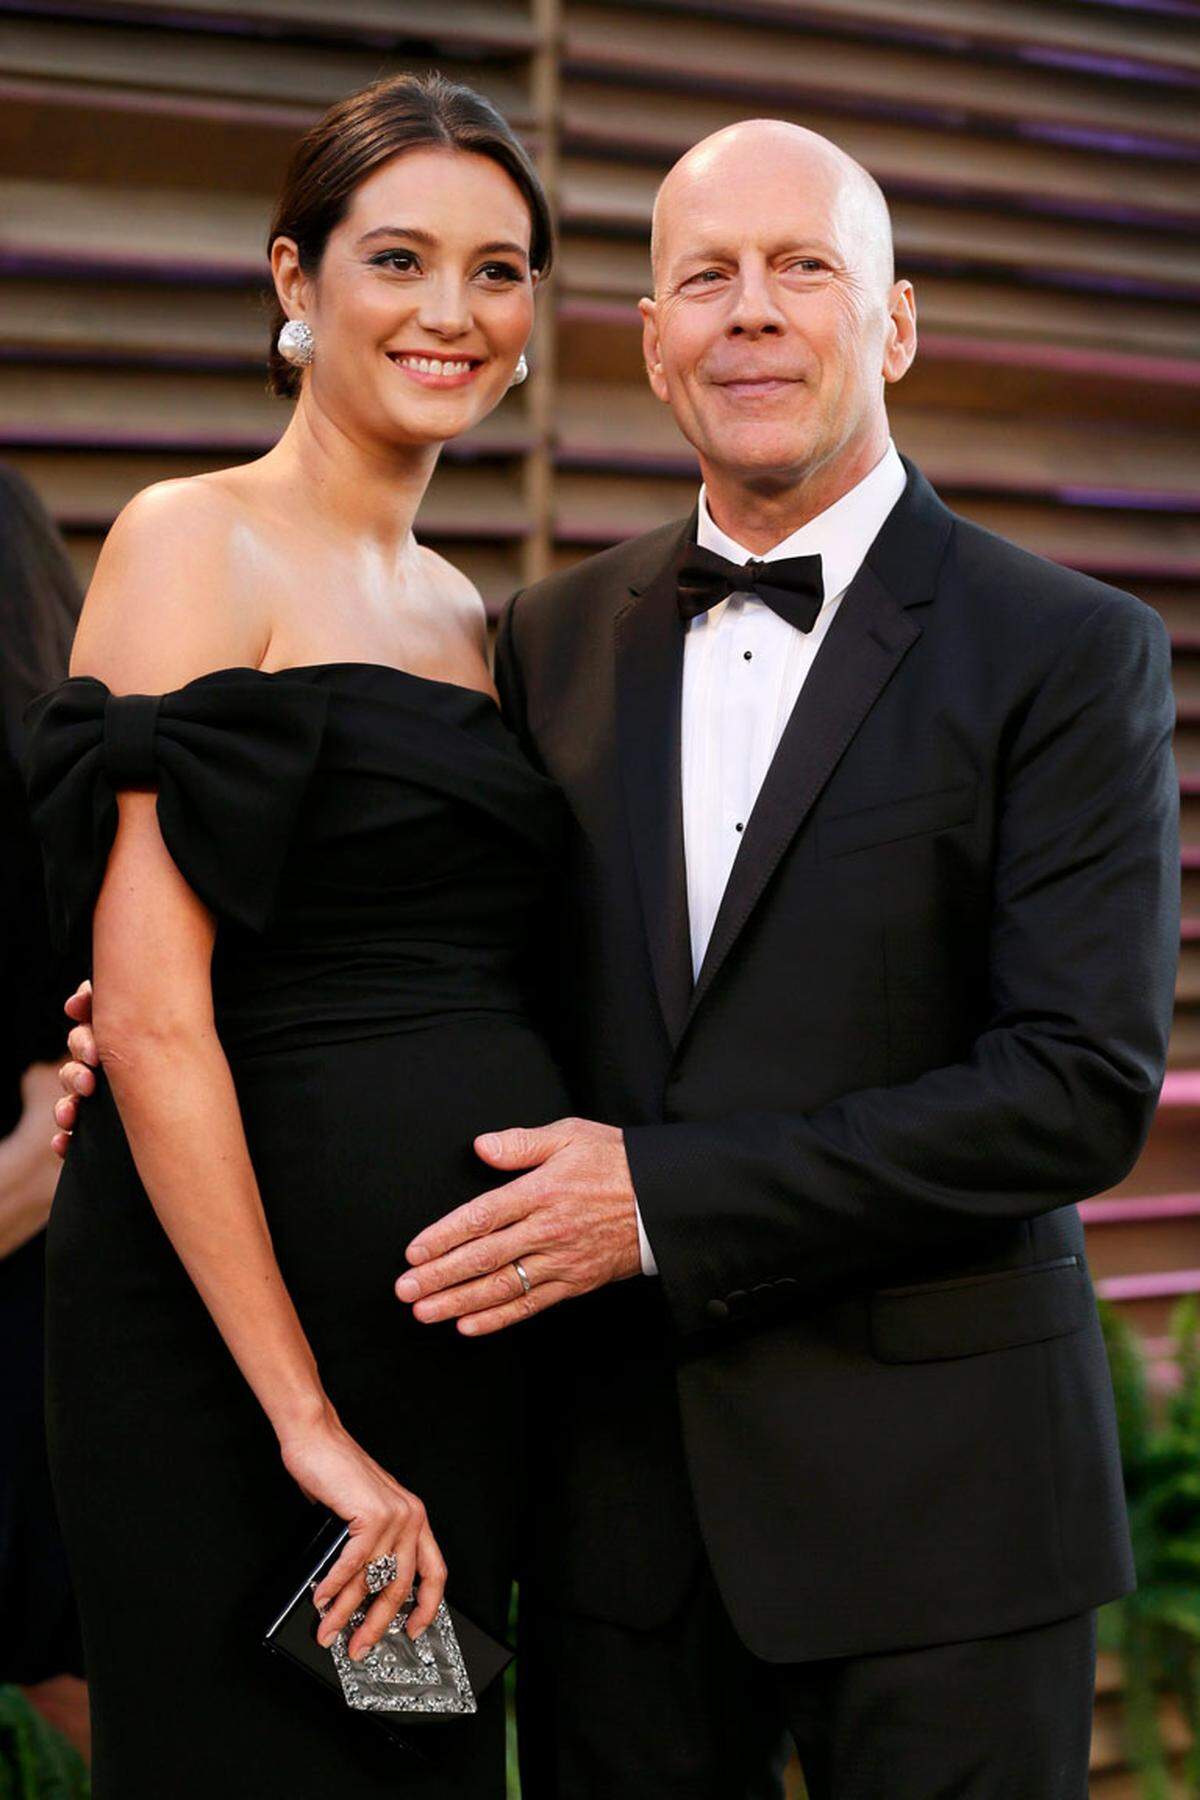 2009 ehelichte der Actionstar Bruce Willis die um 23 Jahre jüngere Version seiner Ex-Frau Demi Moore. Sie heißt Emma Heming und ist ebenfalls Schauspielerin.